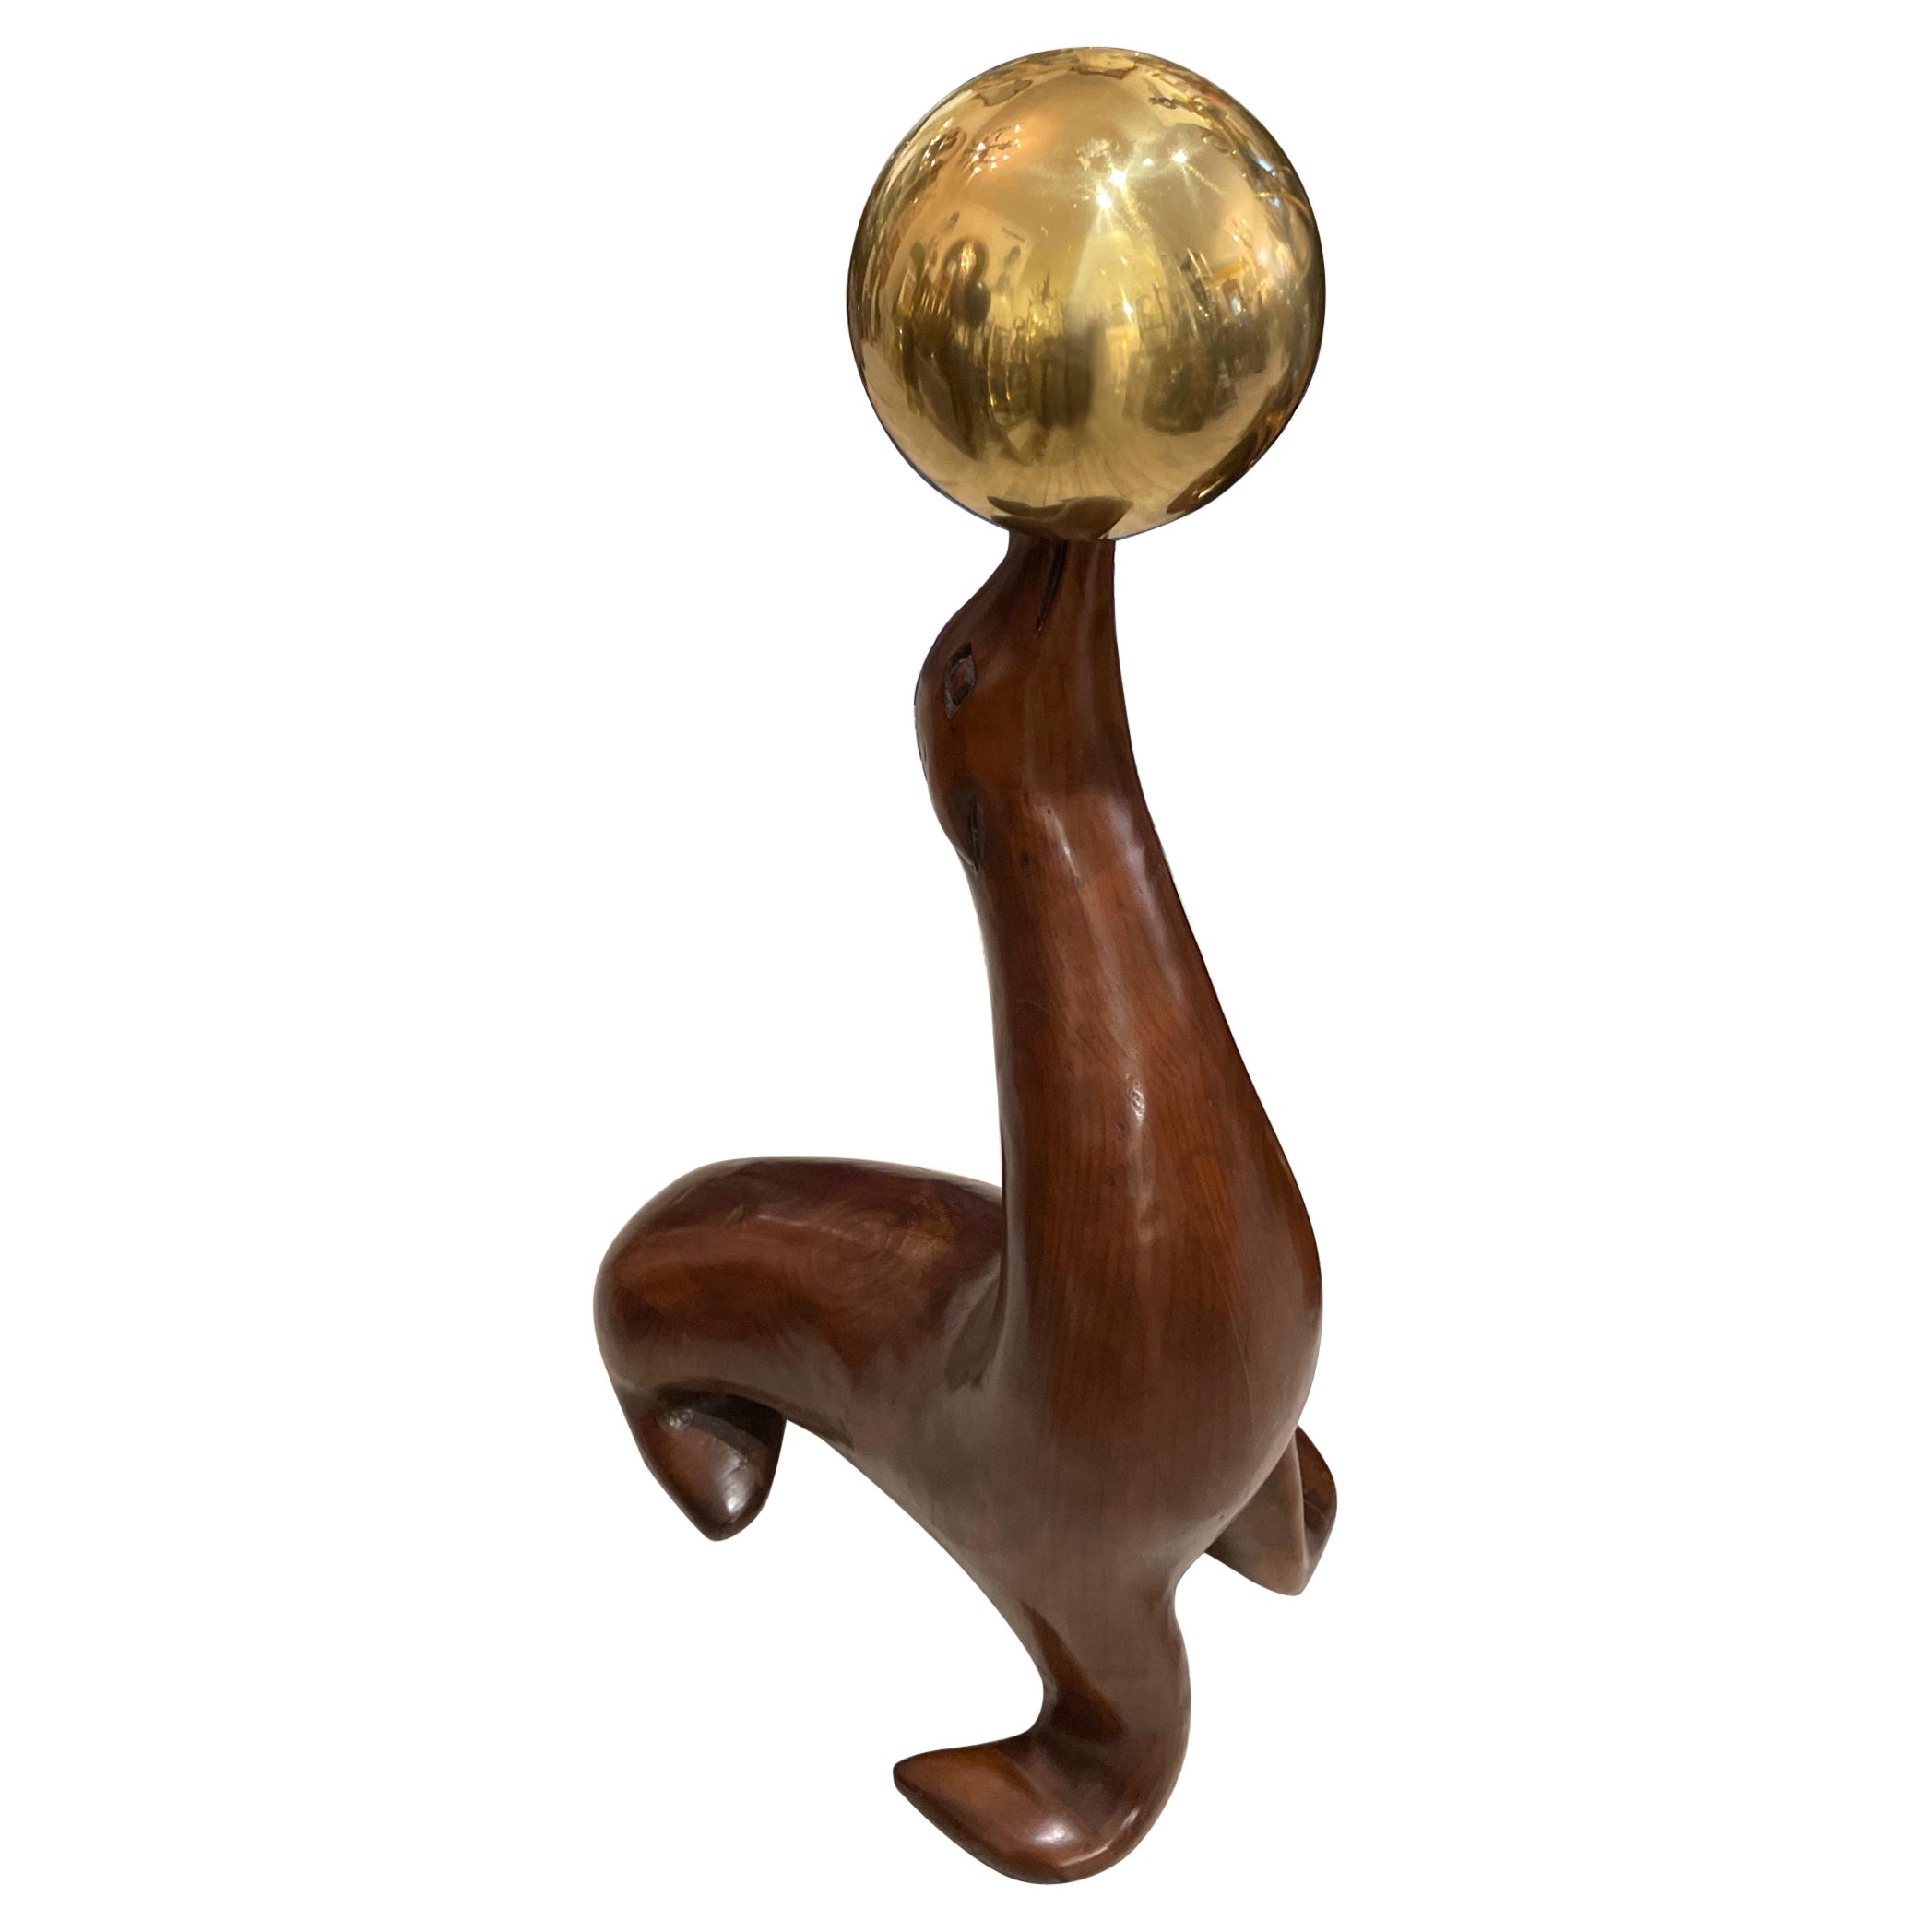 Grande sculpture en bois d'un sceau balançant une boule de laiton